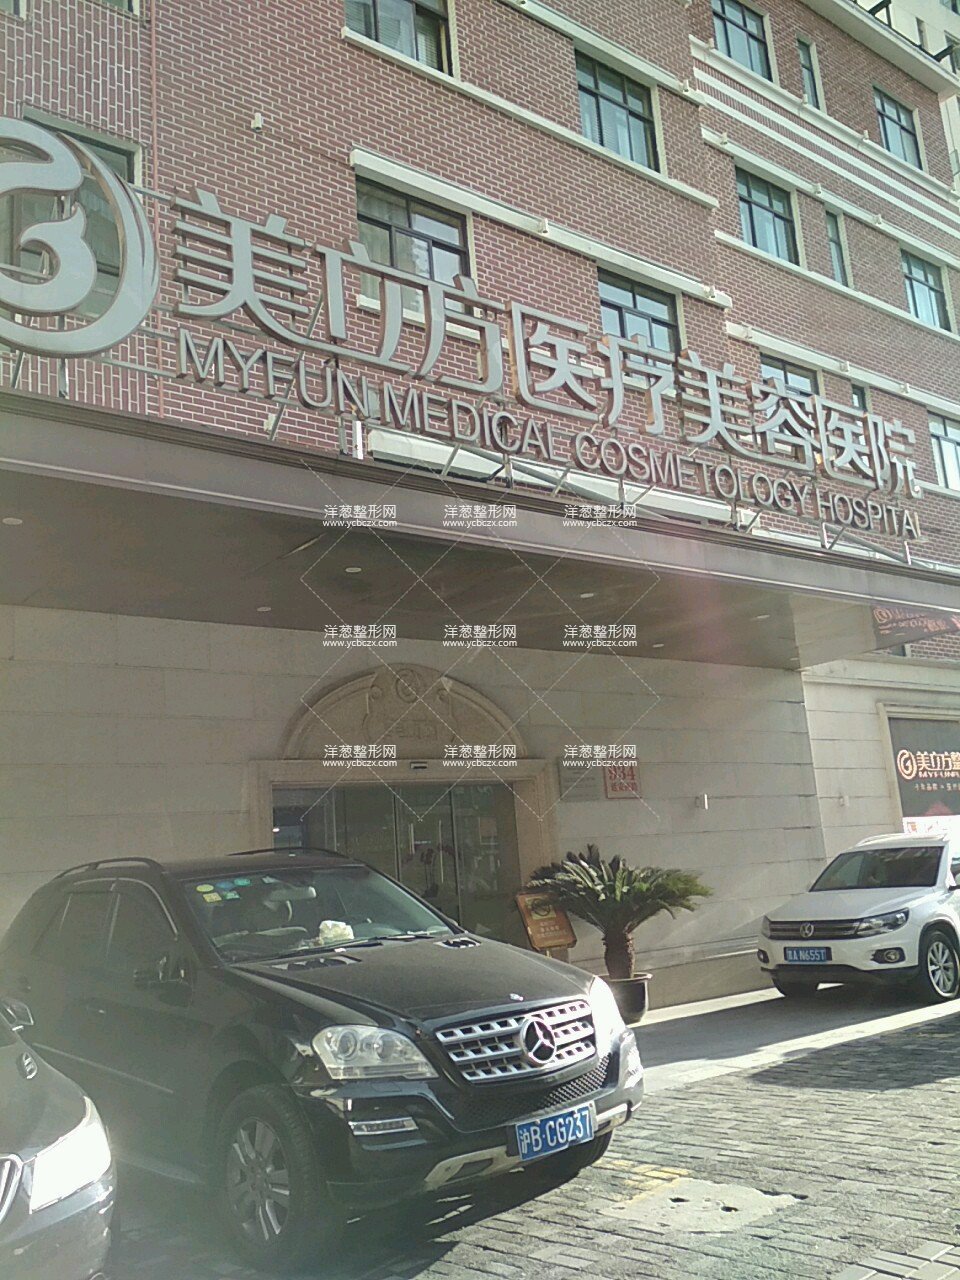 上海美立方整形医院